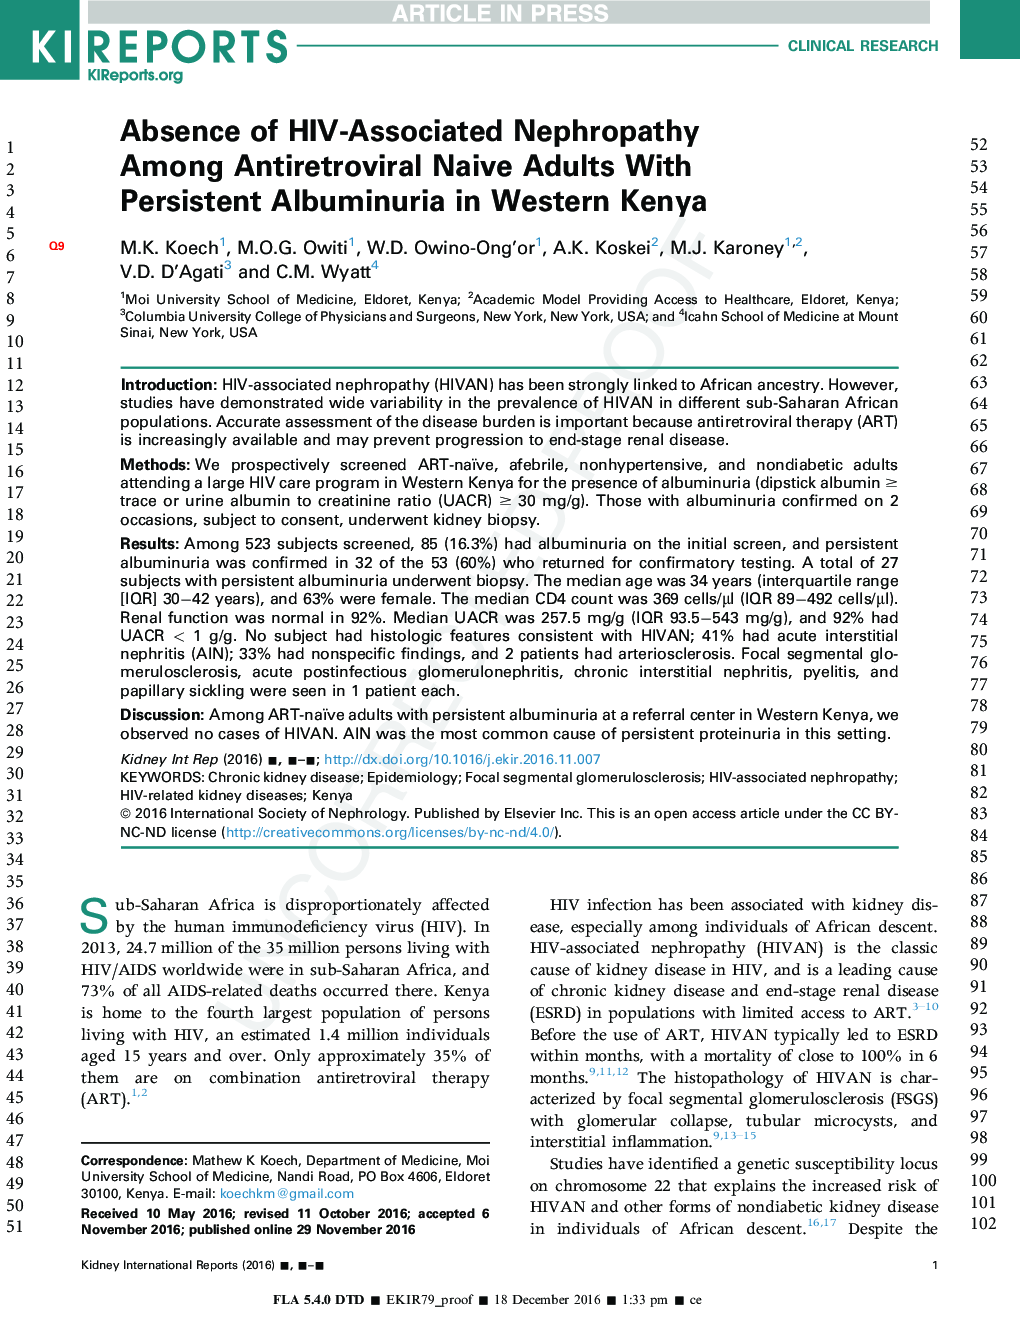 عدم وجود نفروپاتی وابسته به اچ آی وی در میان بزرگسالان مبتلا به ضد رتروویروسی با آلبومینوری پایدار در کنیا غربی 